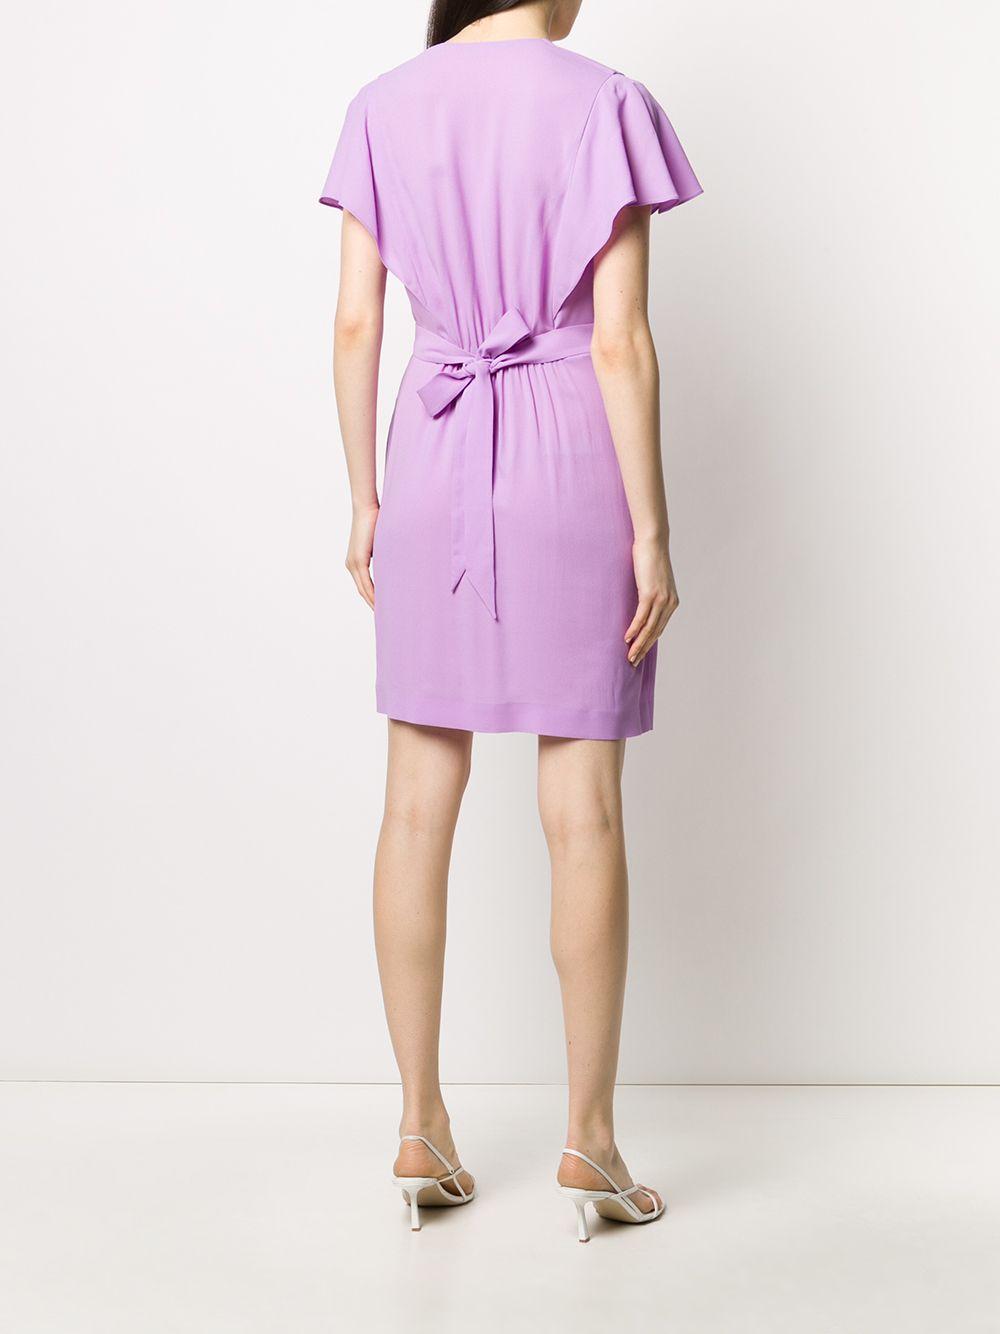 Stella McCartney Synthetic Tie Waist Short Dress in Purple - Lyst